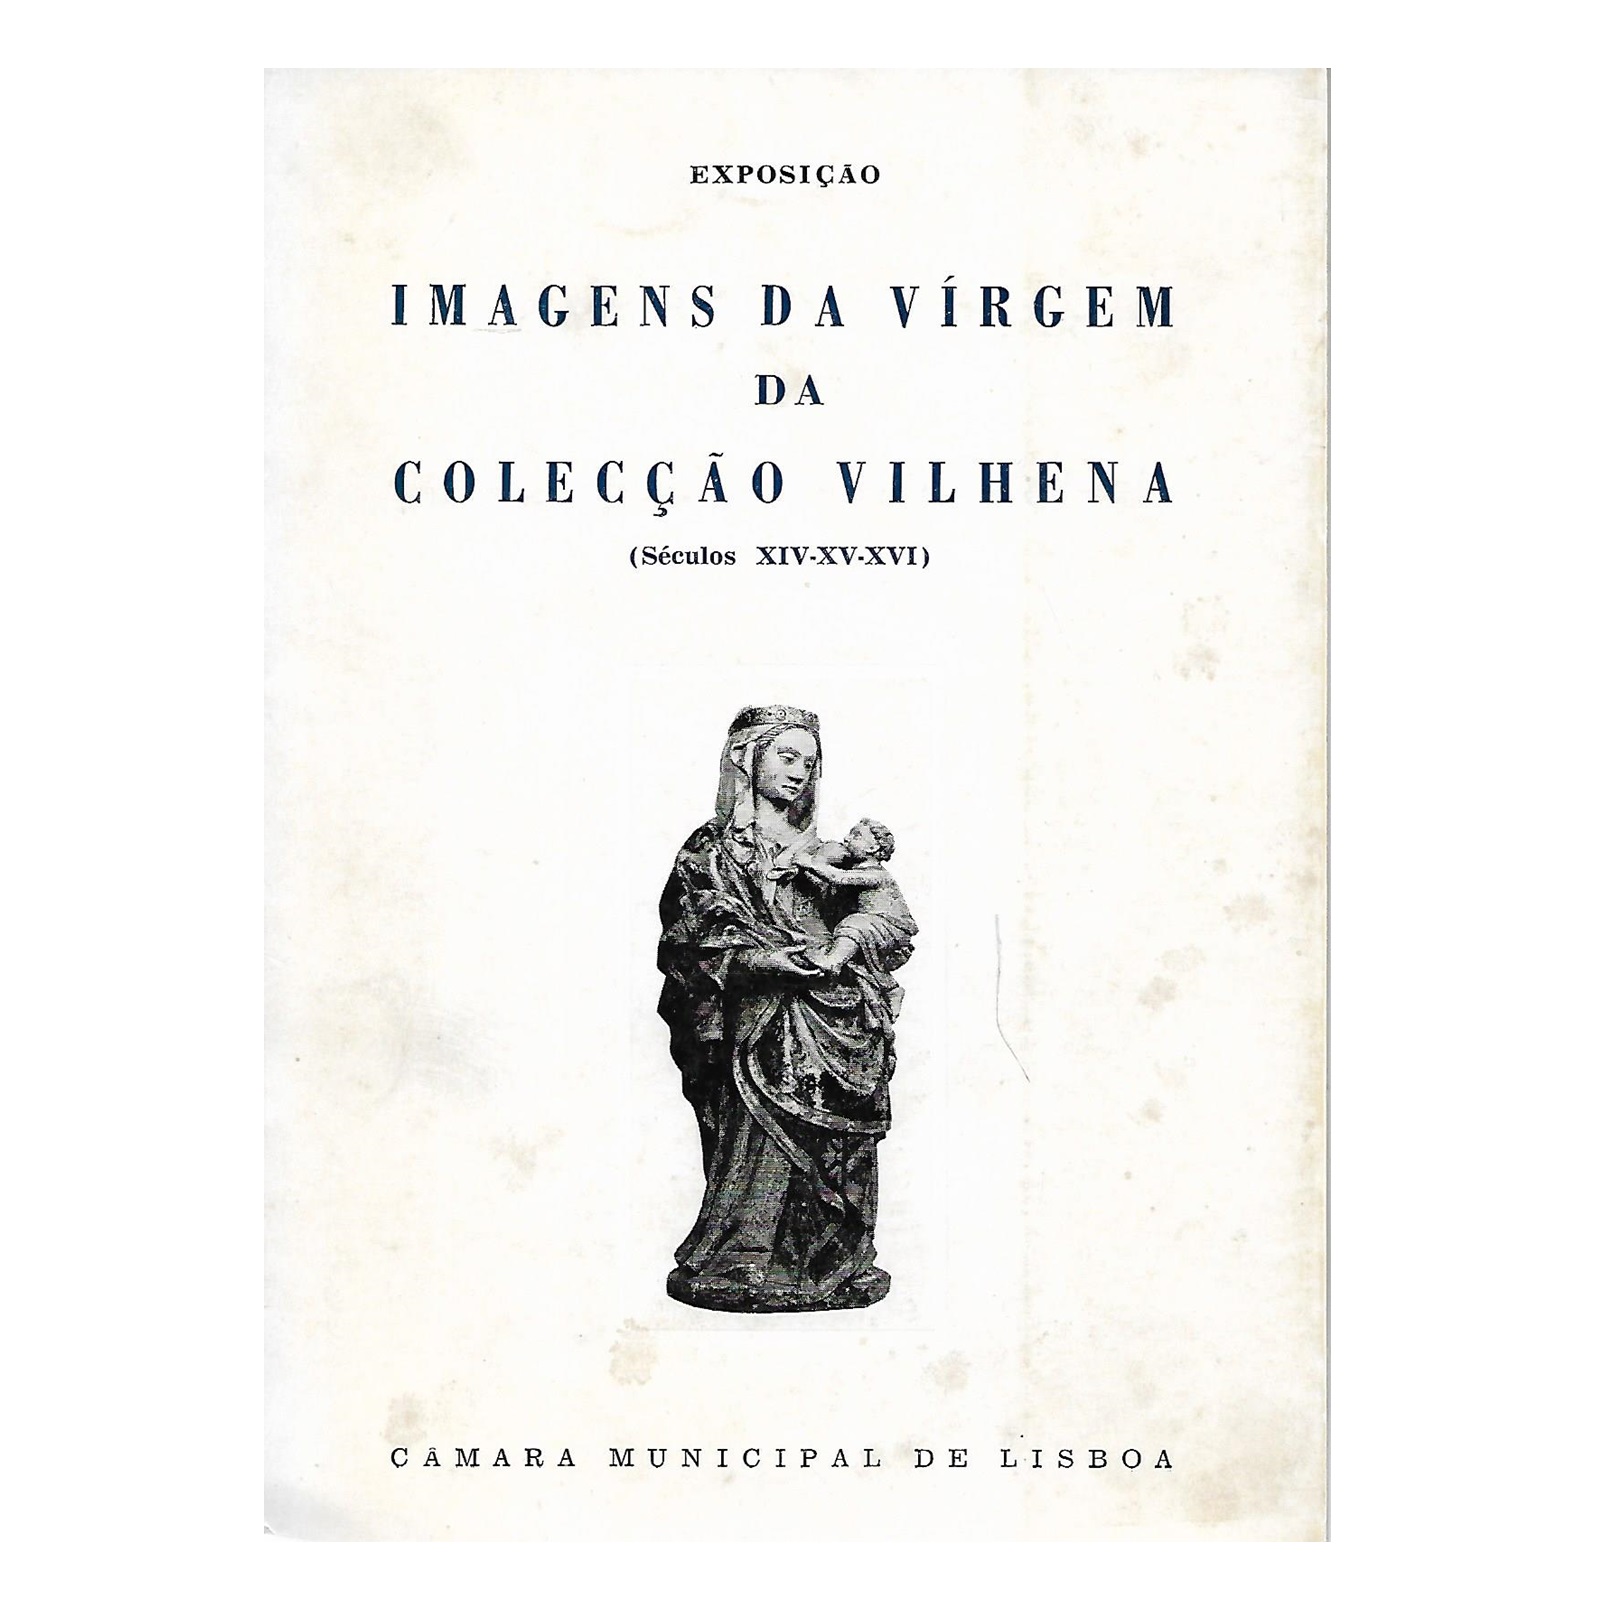 IMAGENS DA VIRGEM DA COLECÇÃO VILHENA (SÉCULOS XIV-XV-XVI)